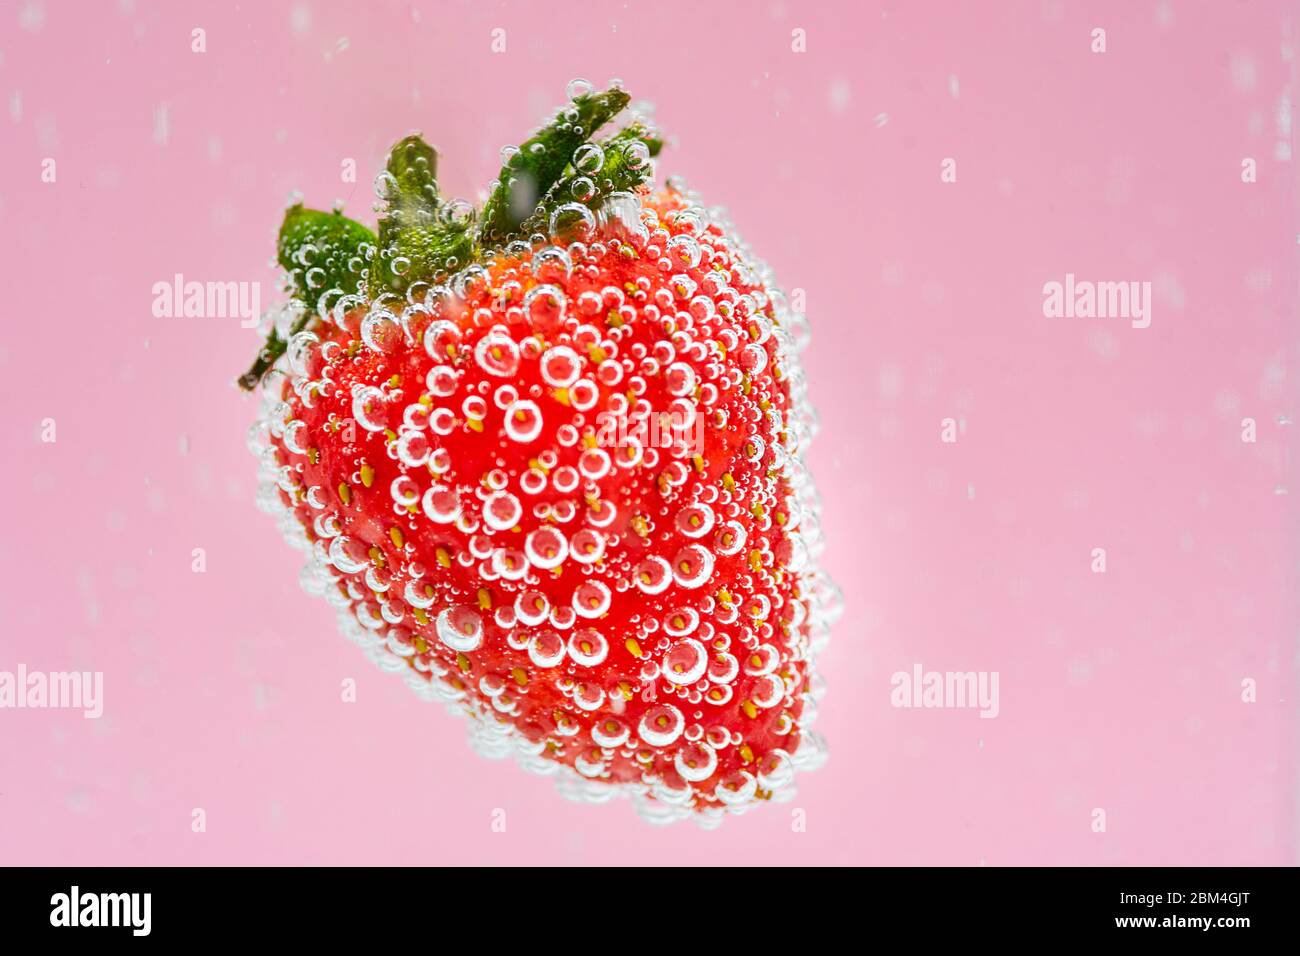 Rote Erdbeerfrucht, die im Wasser auf rosa Hintergrund schwebt. Hochwertige kommerzielle Food-Fotografie. Konzept für frische Getränke. Stockfoto